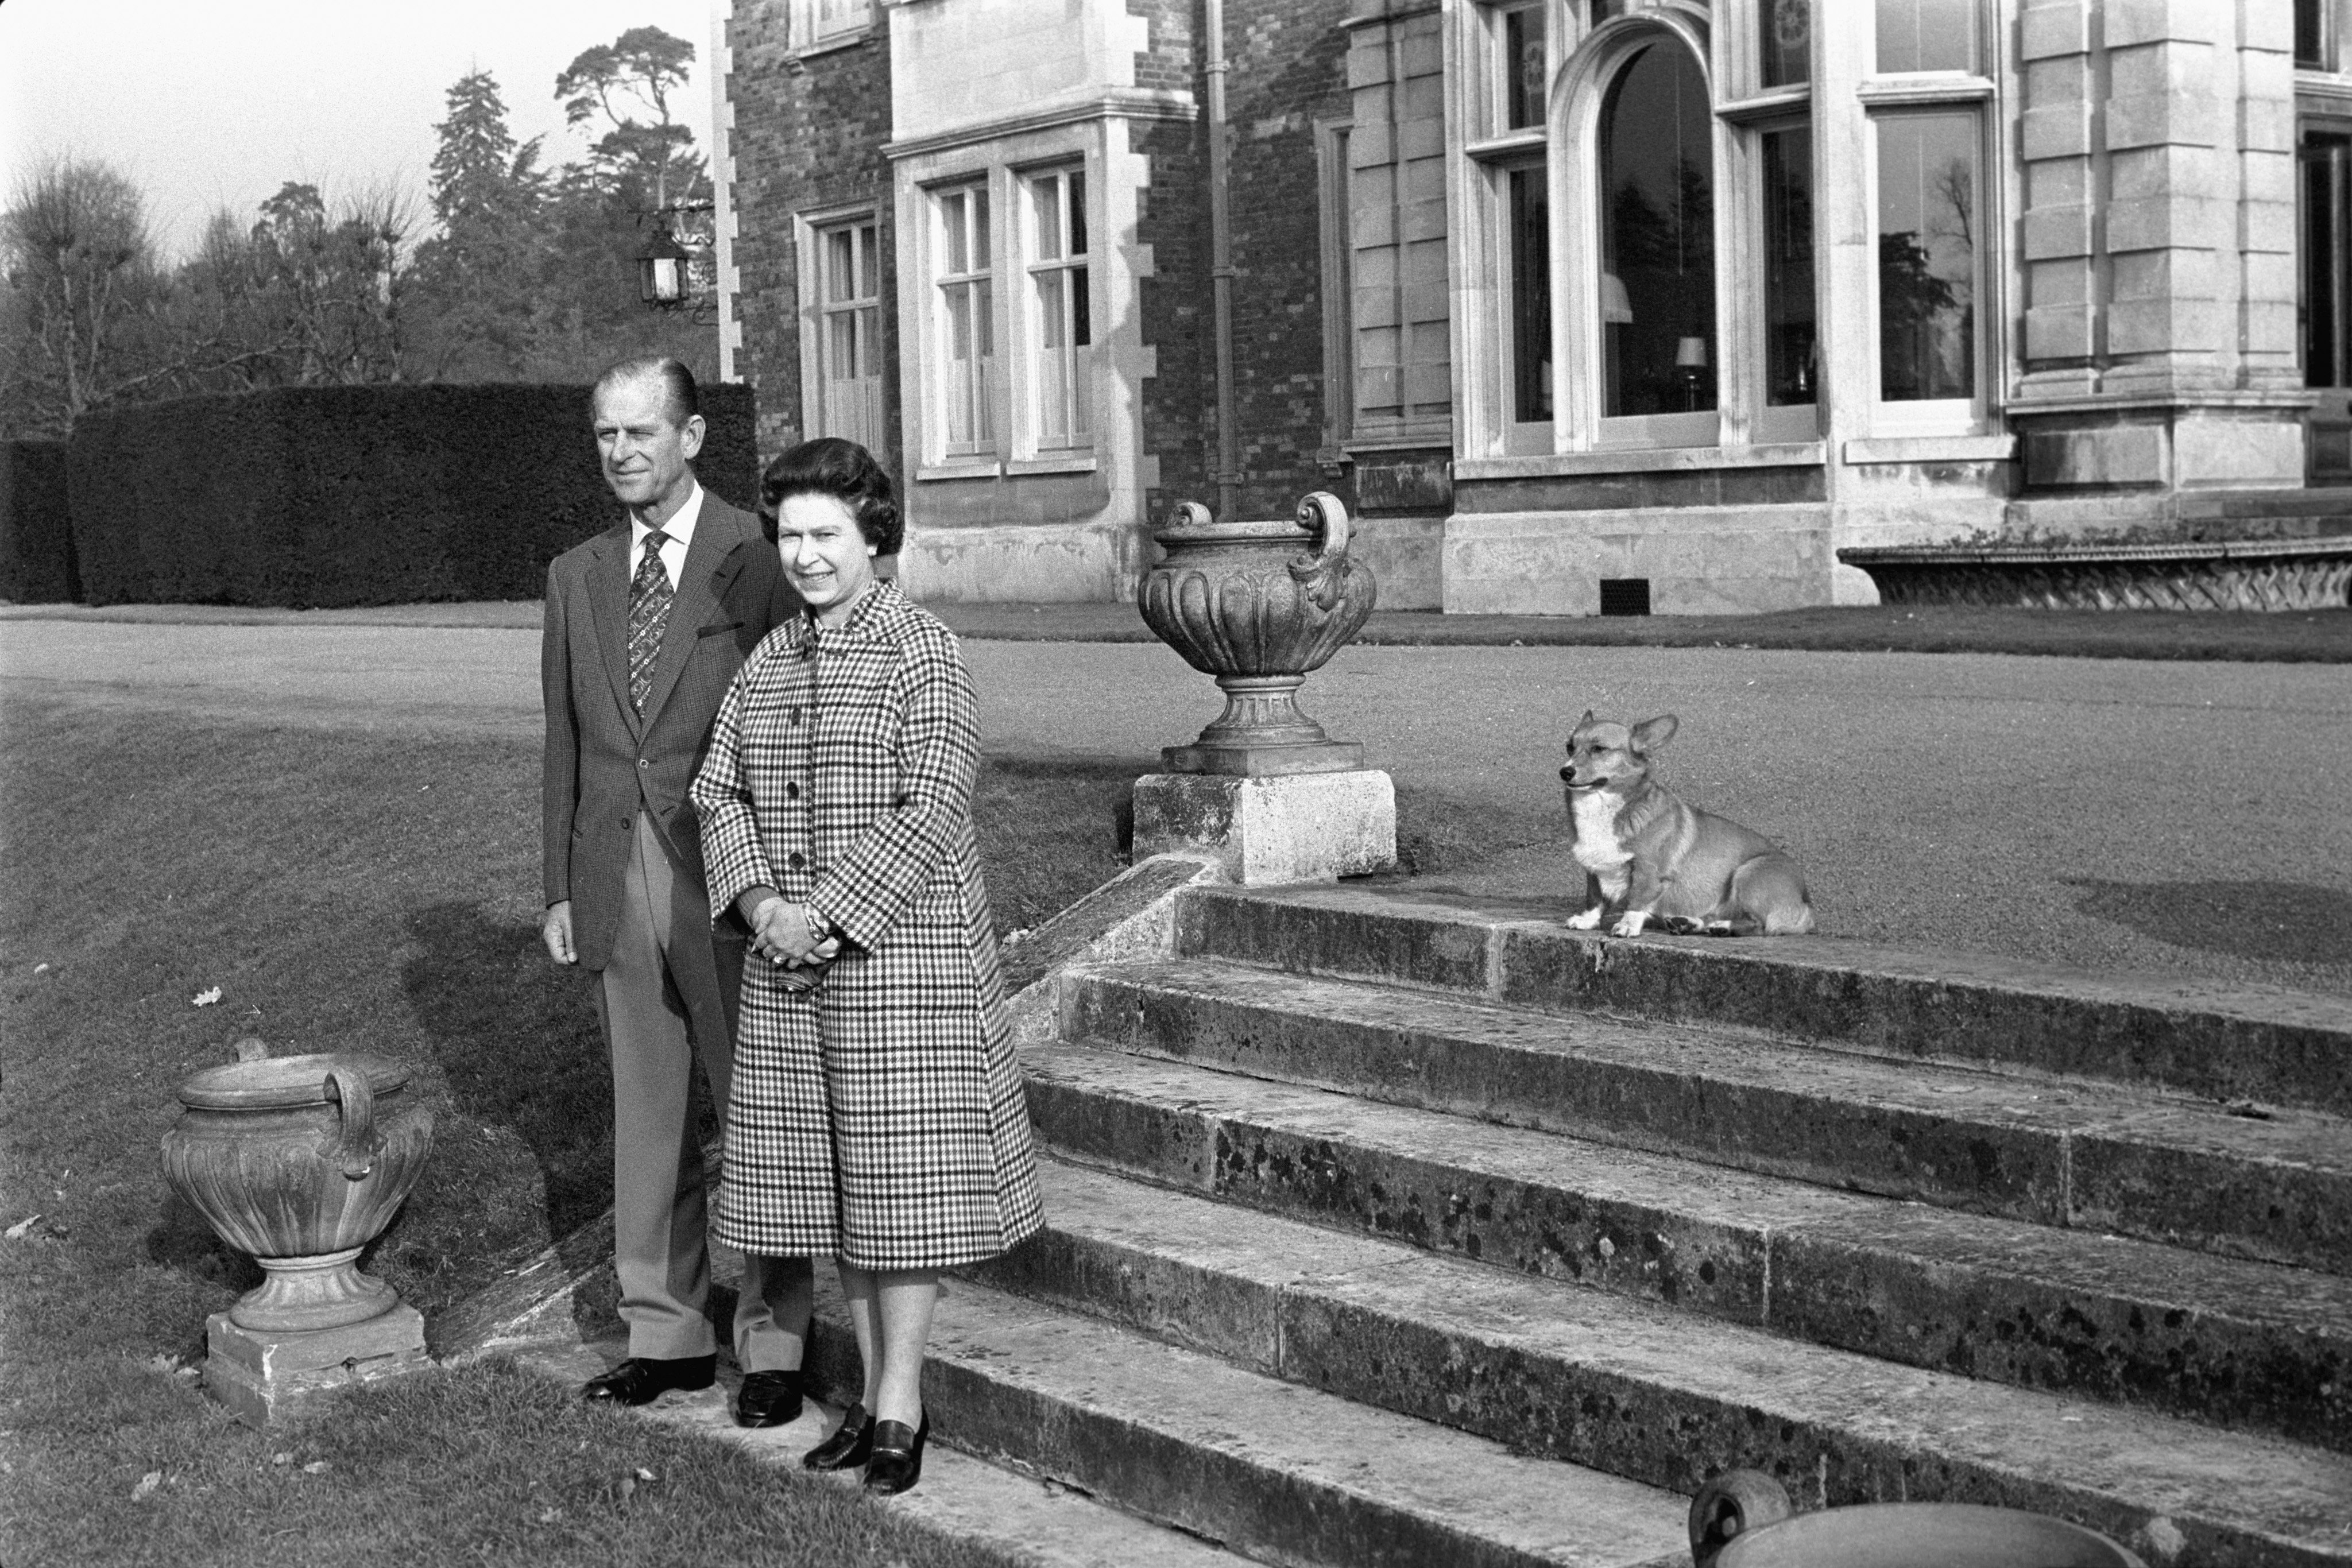 The Queen and The Duke of Edinburgh at Sandringham House